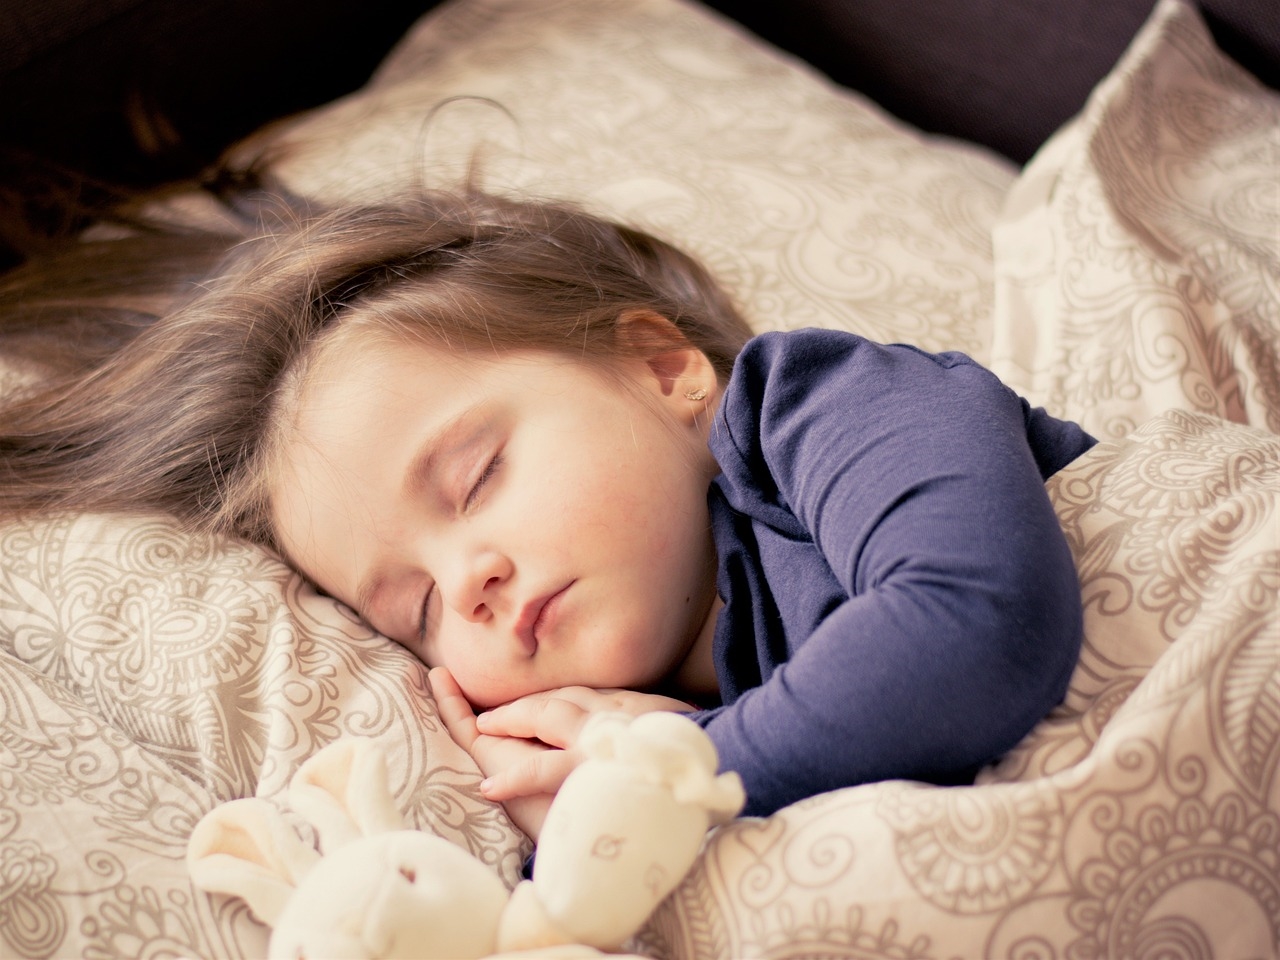 Czy jest sposób na to, by oduczyć dziecko sikania w nocy?